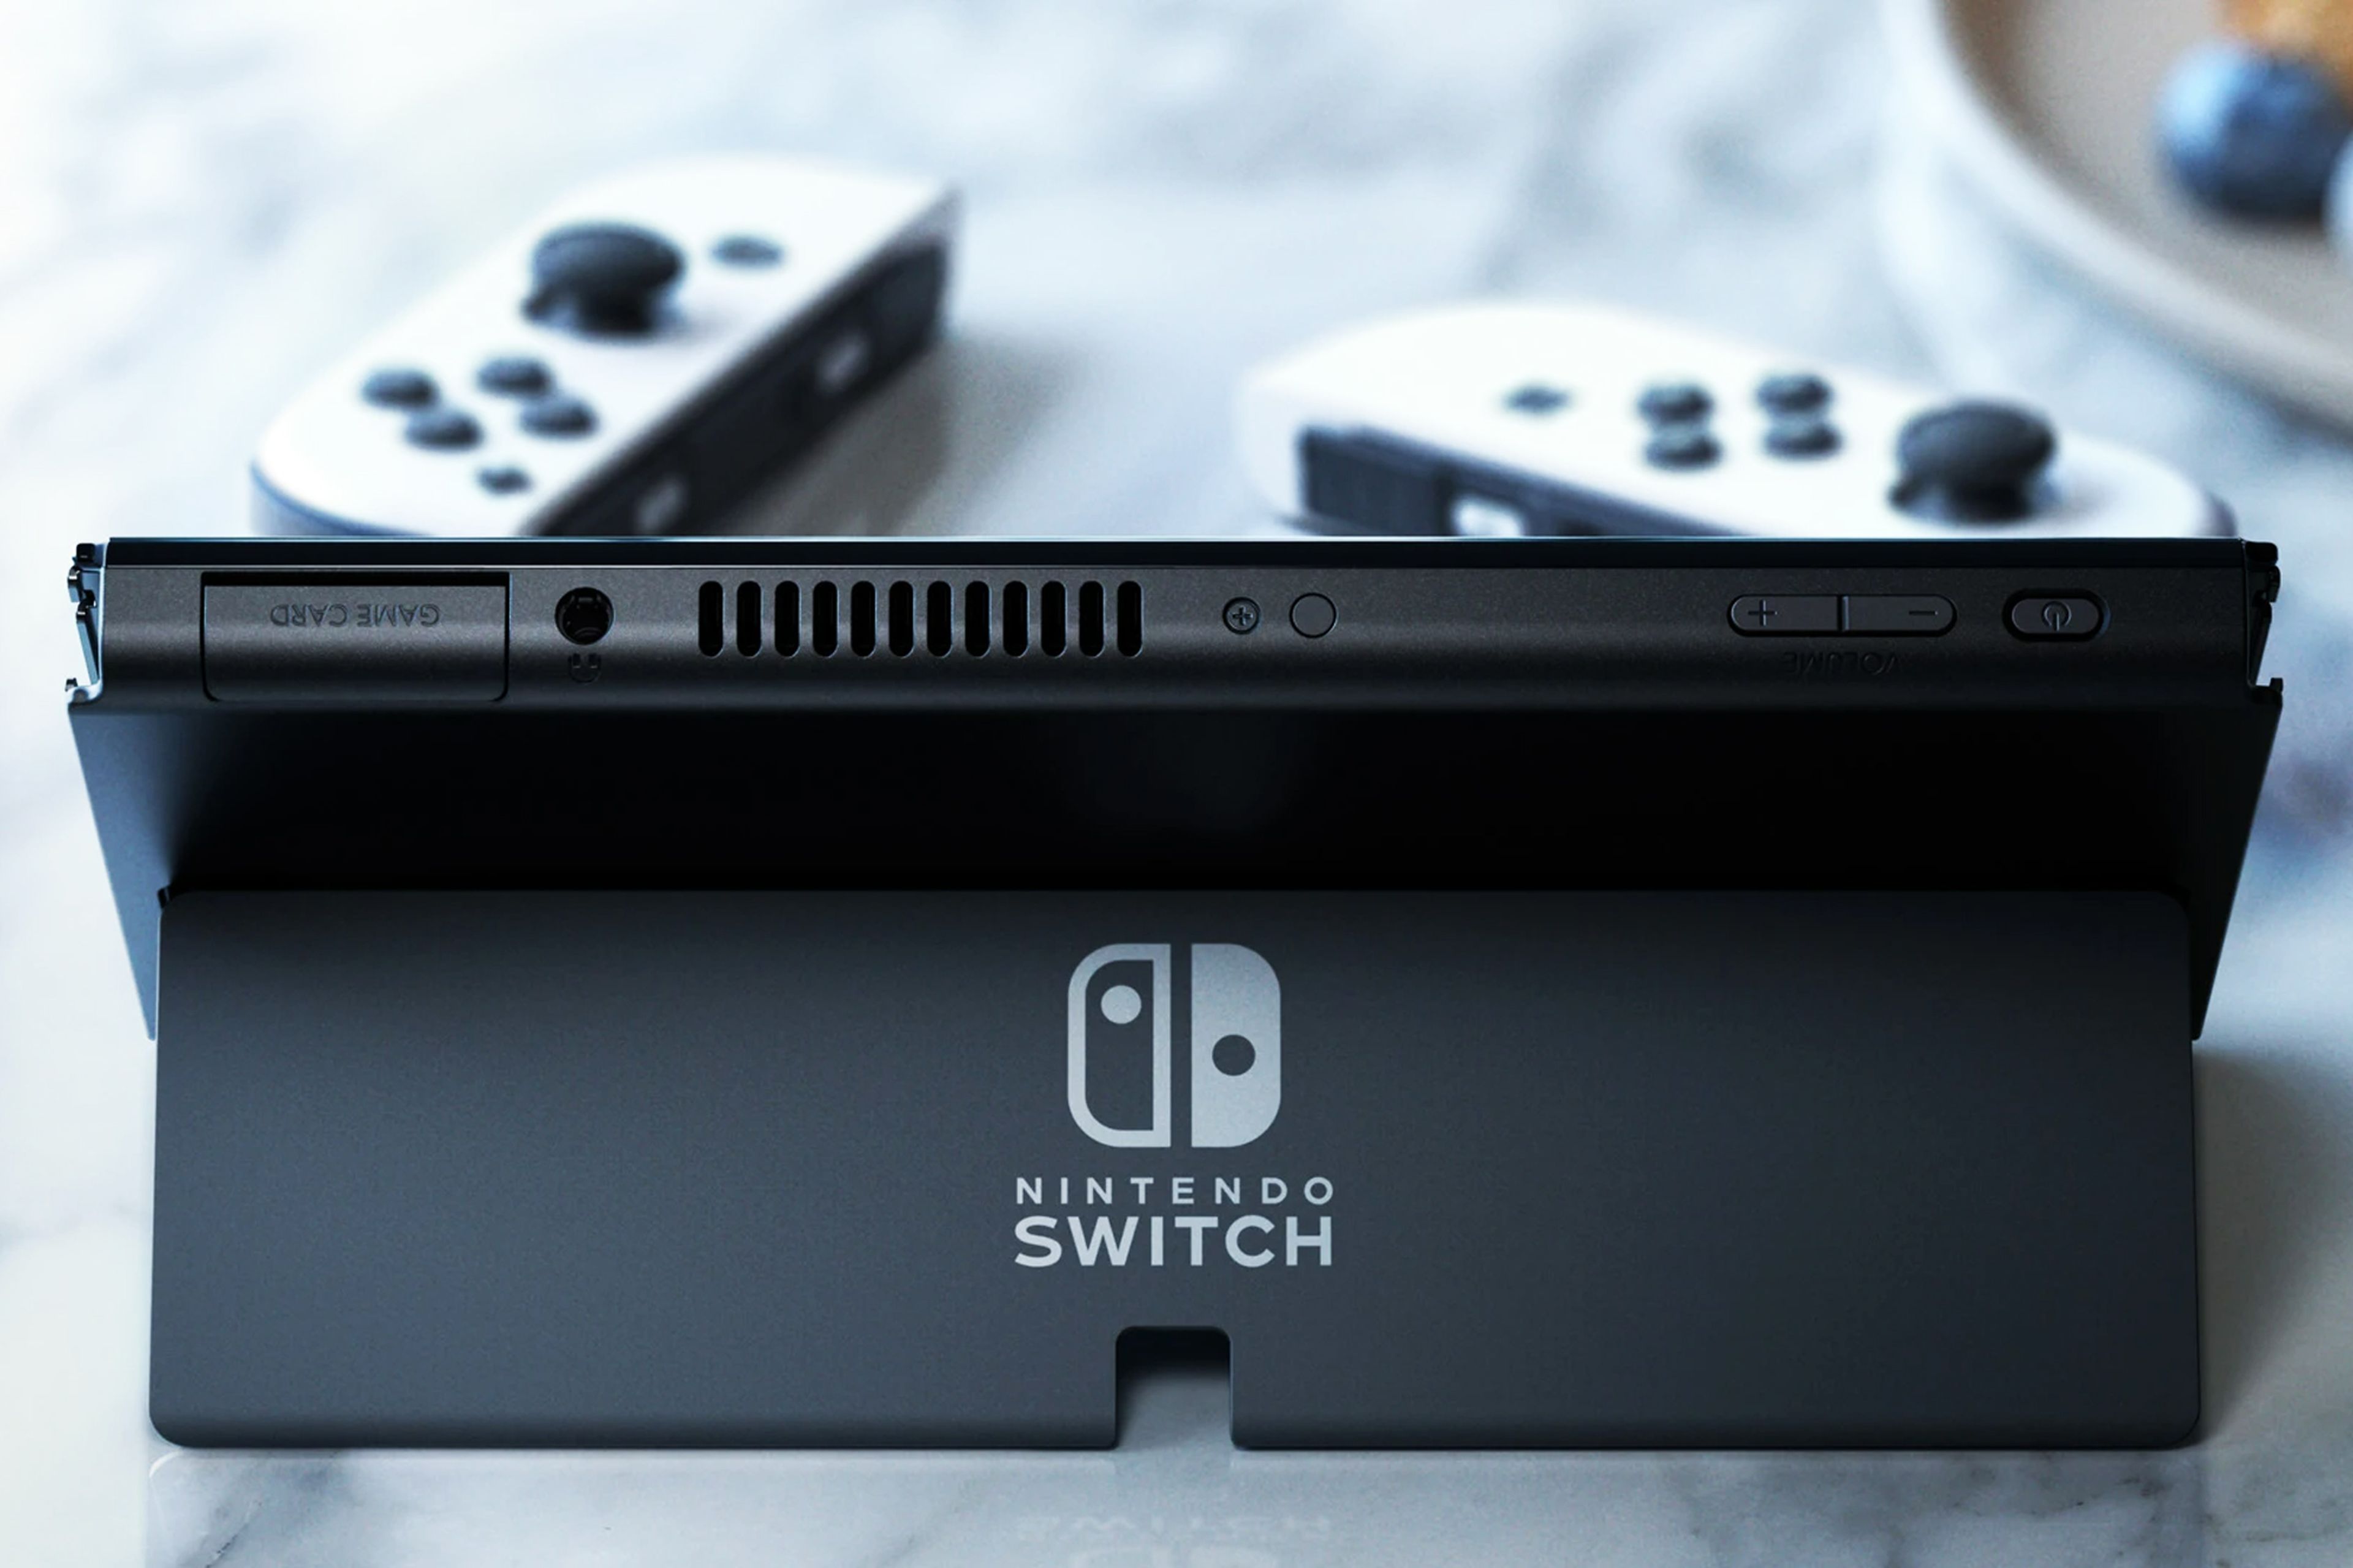 Ofertas de Nintendo Switch Carrefour: estas consolas y combinaciones están en oferta | Hobby Consolas